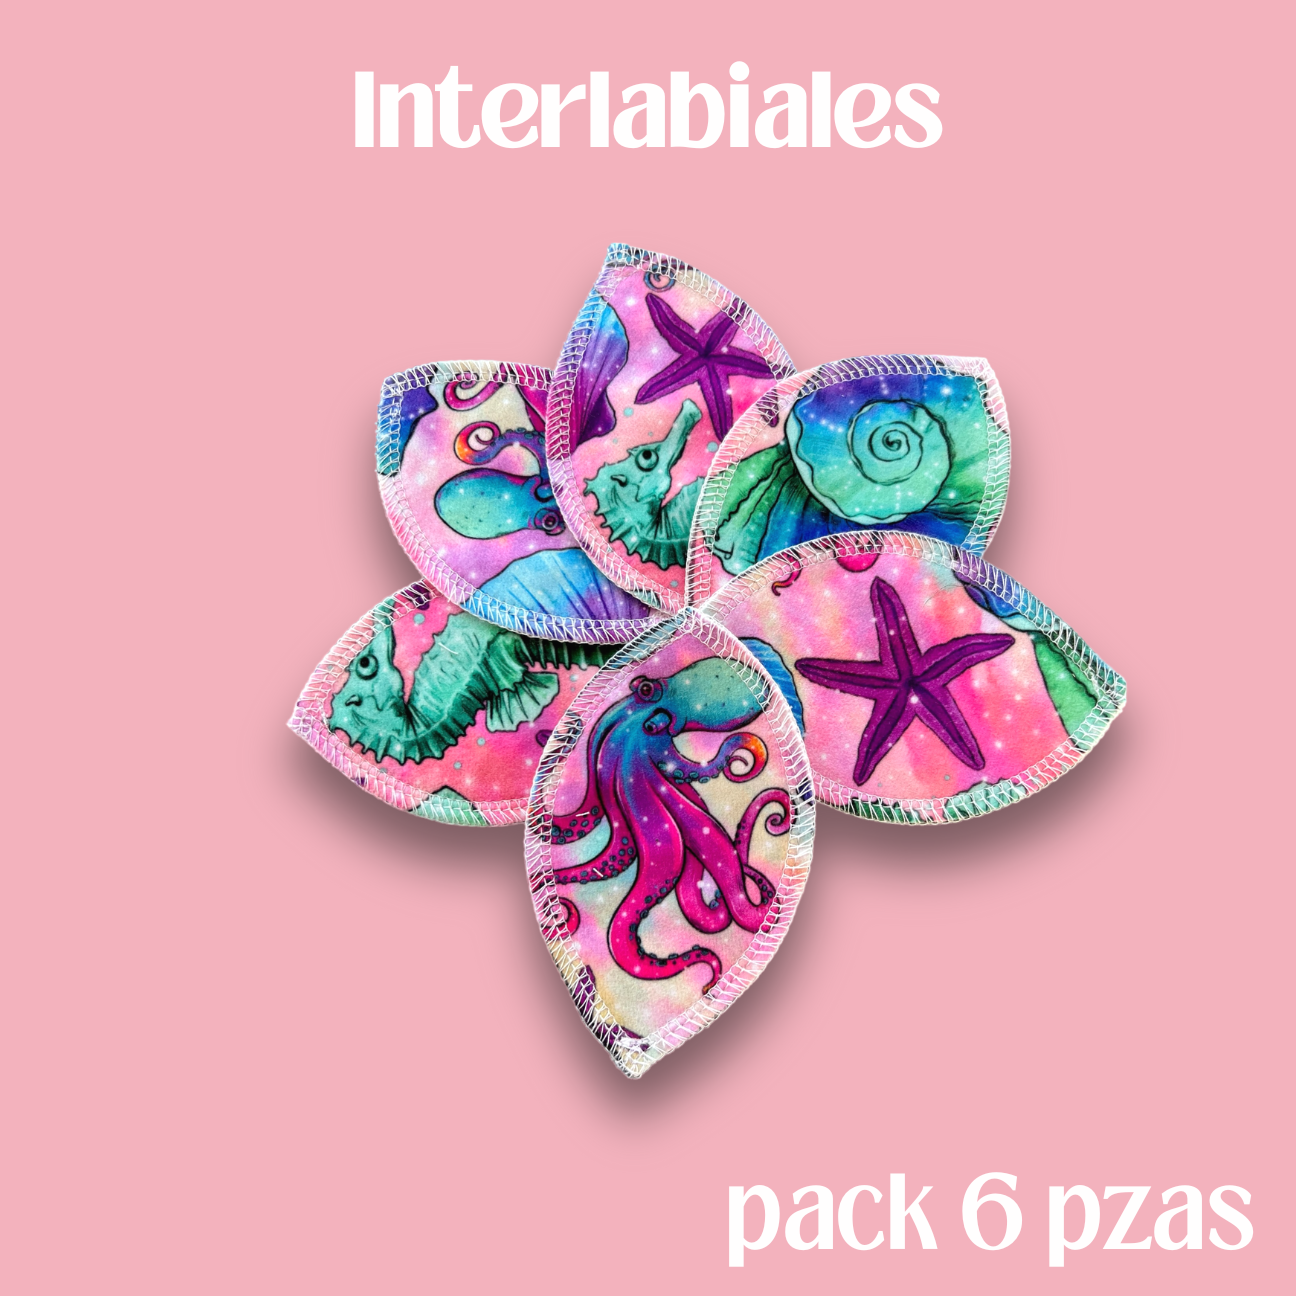 Interlabiales arrecife pack 6 pzas